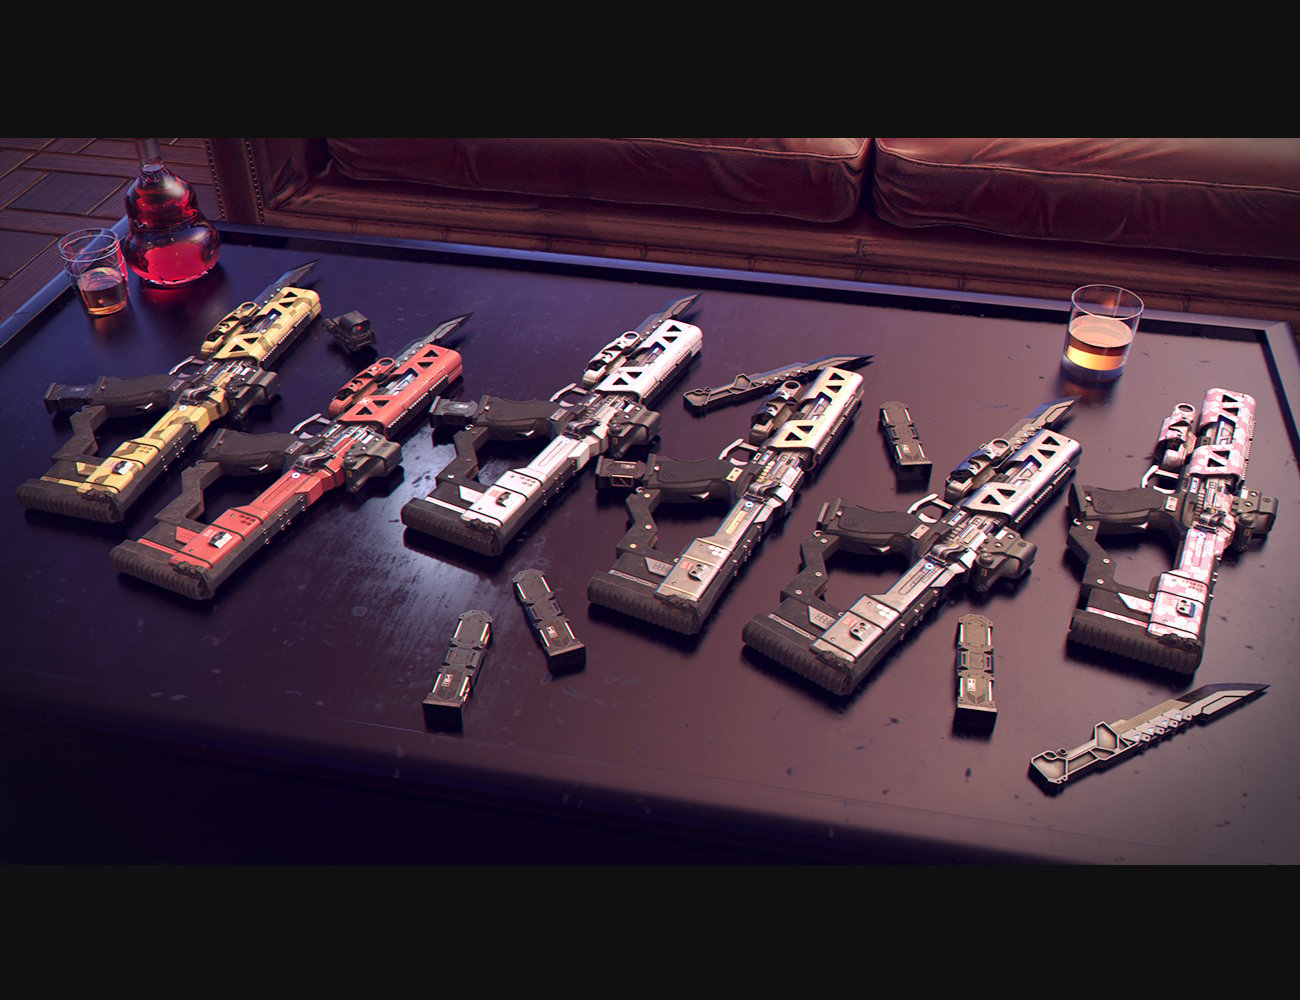 Cyberpunk Pistol SMG by: Polish, 3D Models by Daz 3D